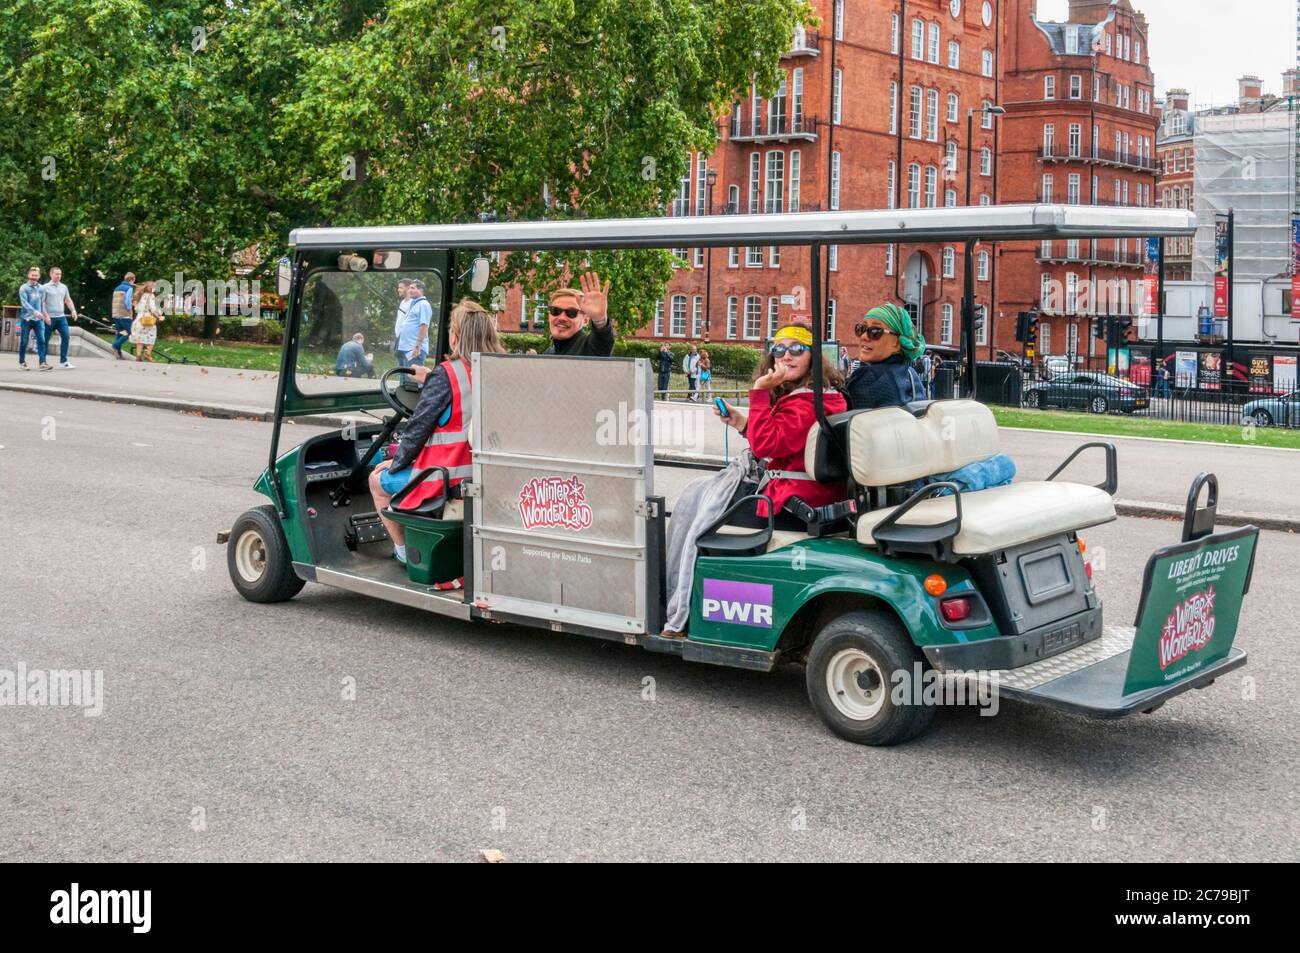 Liberty Drives Elektrobuggys bieten Transport rund um Londons Royal Parks für Menschen mit eingeschränkter Mobilität. Gezeigt in Kensington Gardens. Stockfoto